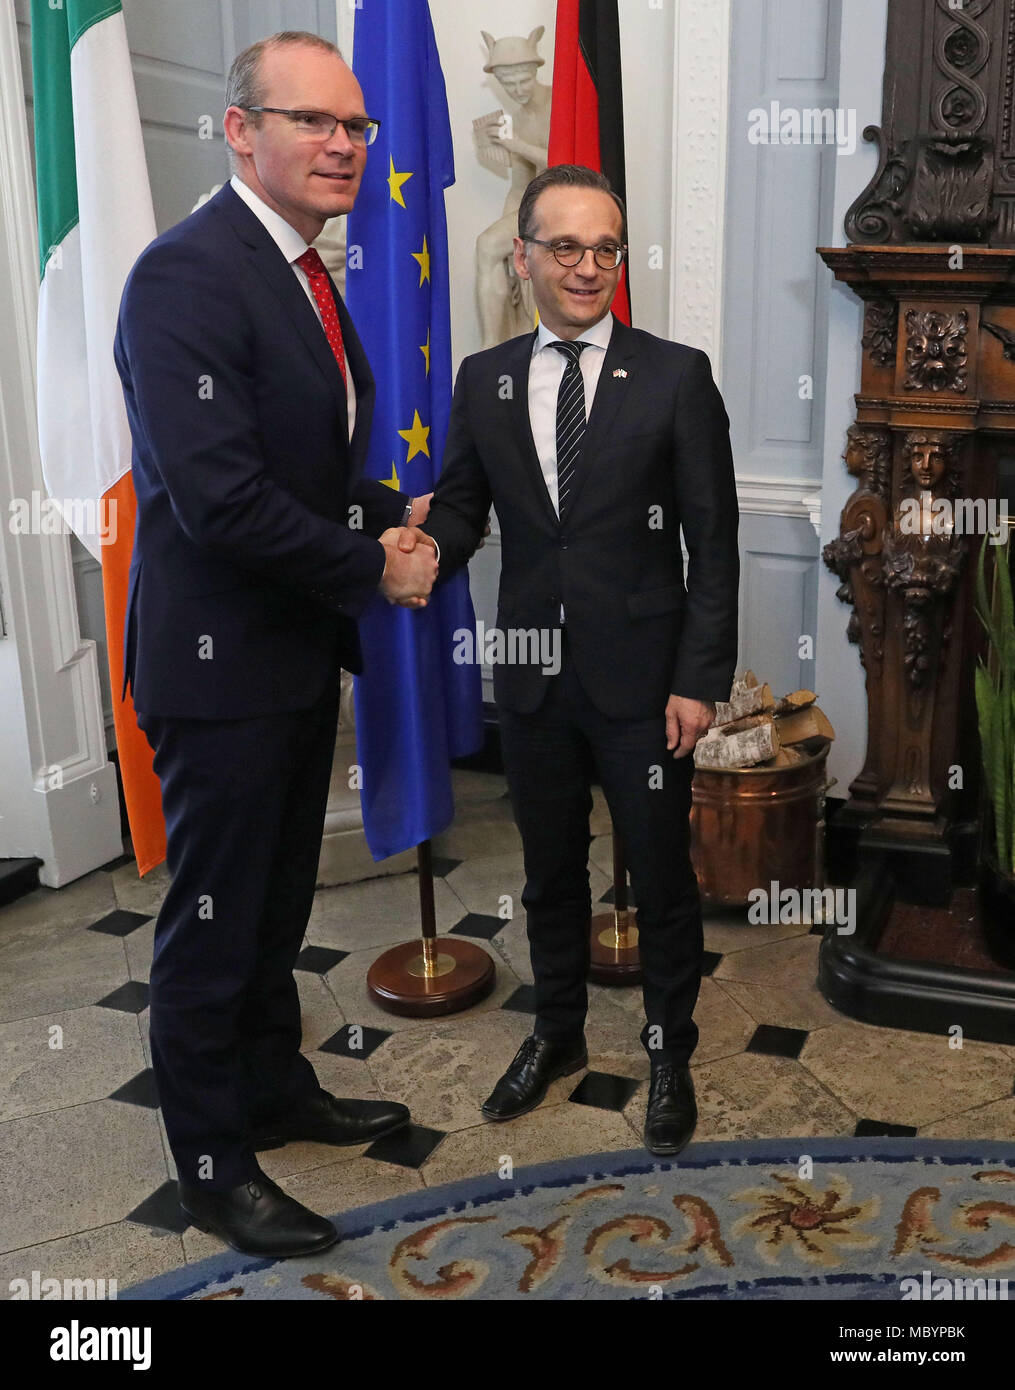 Simon Coveney, T‡naiste (vice-premier ministre) et ministre des Affaires étrangères et du Commerce (à gauche) d'Irlande, avec Heiko Maas, ministre fédéral des Affaires étrangères allemand, en prévision de pourparlers officiels à la Maison Iveagh à Dublin. Banque D'Images